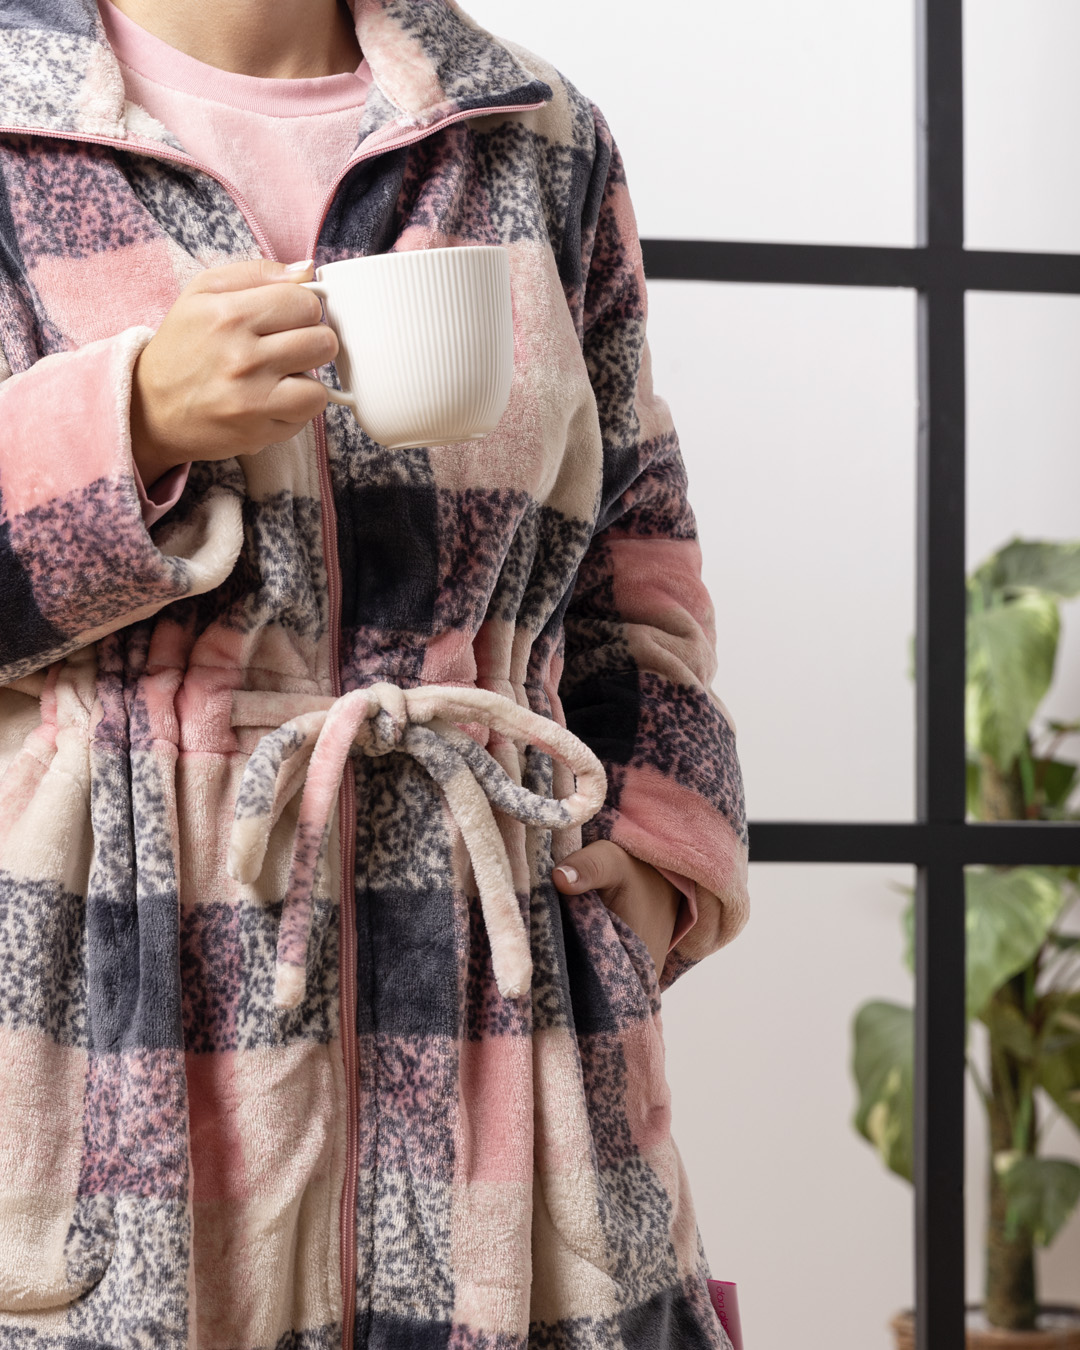 Confort y elegancia en pijamas y batas - Blog - don algodon